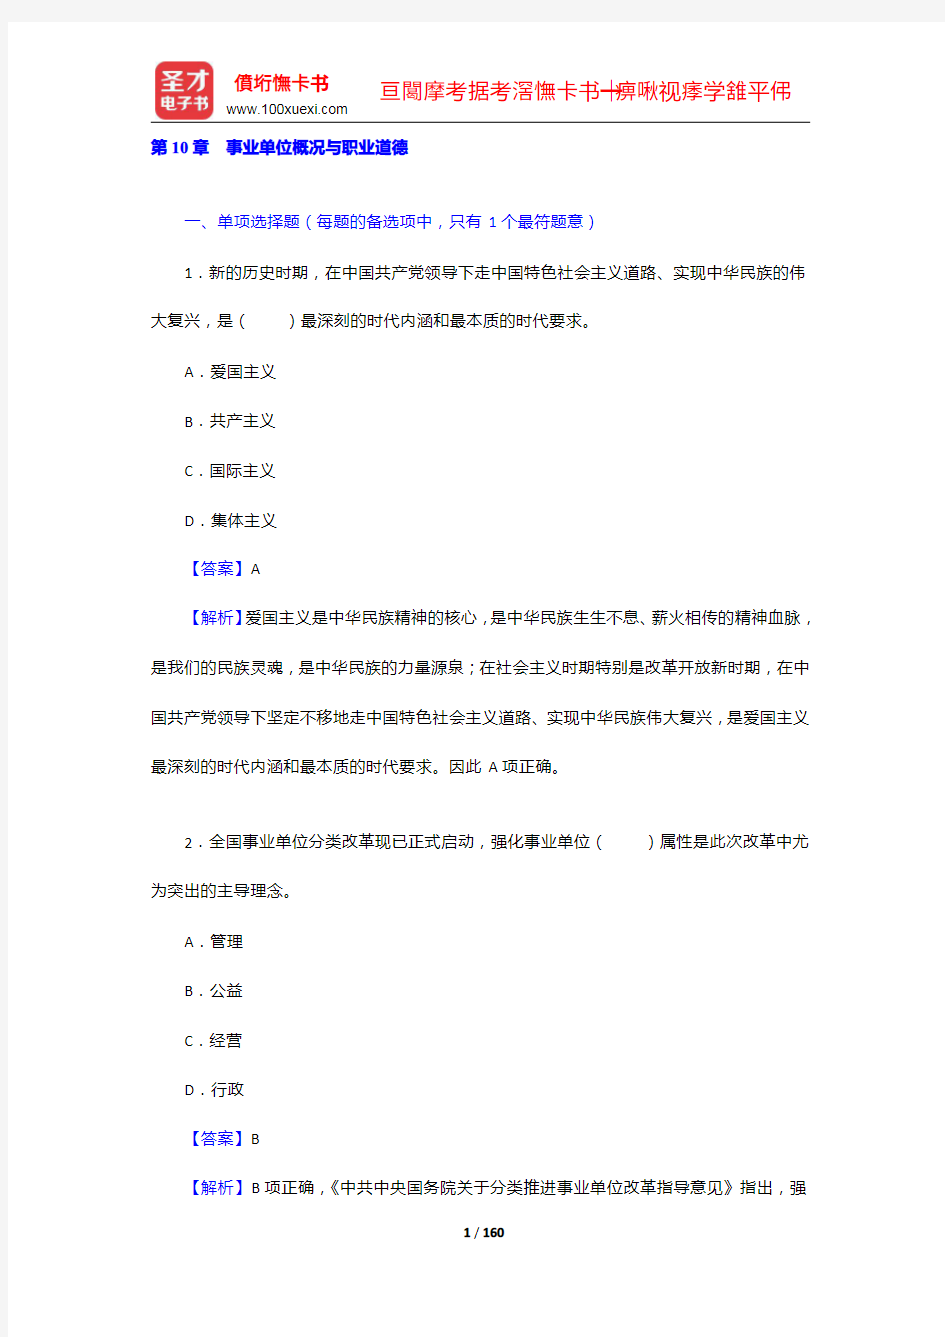 黑龙江省事业单位招聘考试《综合知识》模拟试题及详解(1-2)【圣才出品】